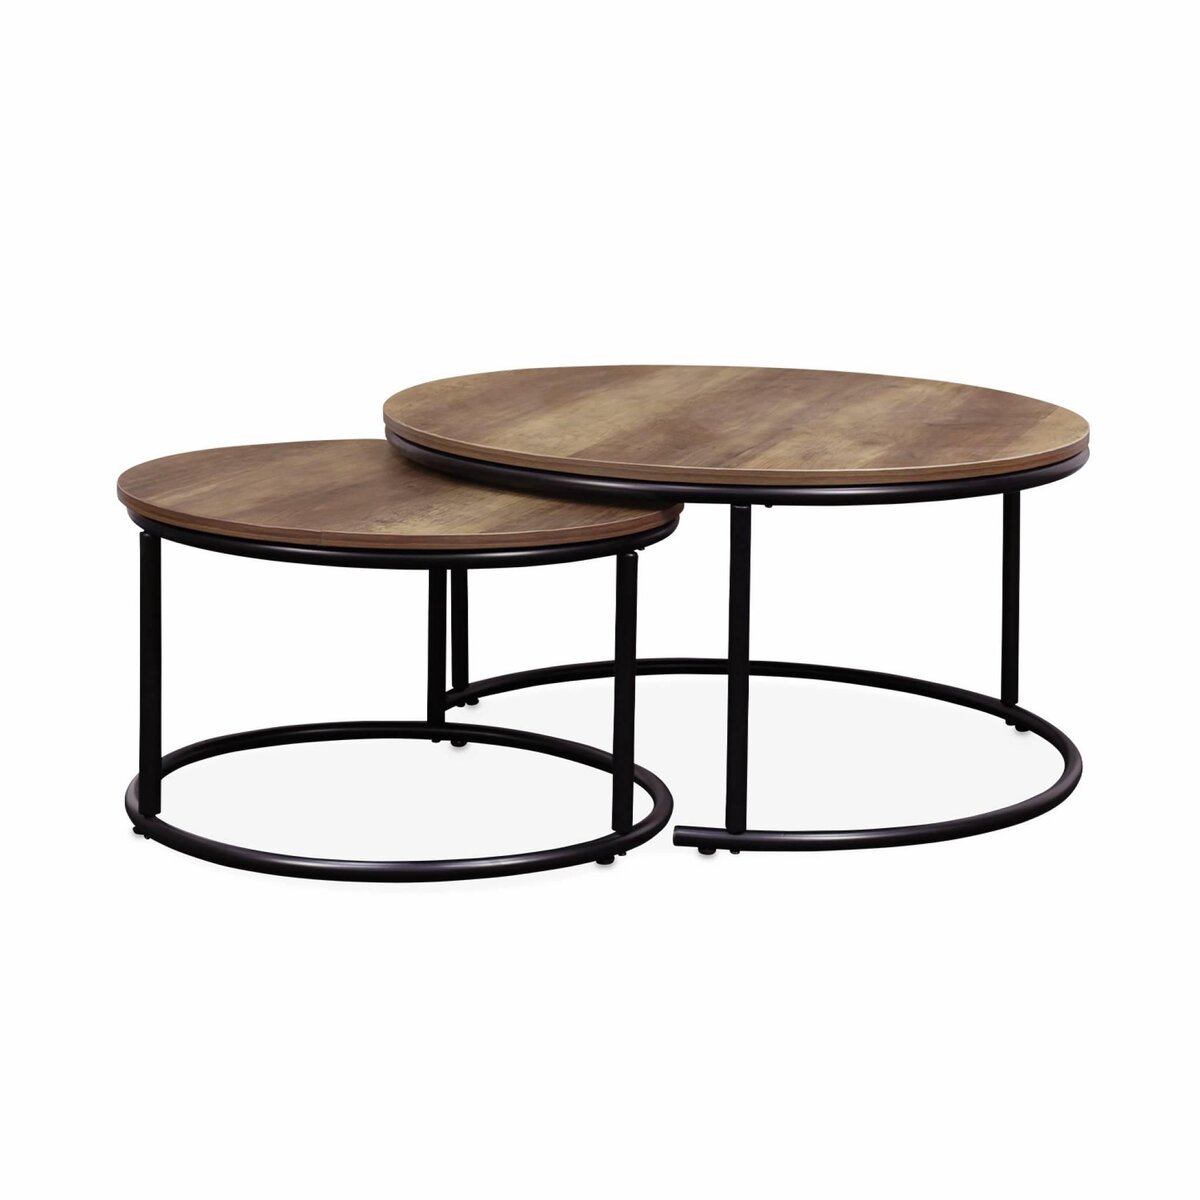 SWEEEK Lot de 2 tables gigognes rondes métal noir. décor bois - Loft - encastrables. 1x Ø77 x H 40cm / x1 Ø57 x H 35cm